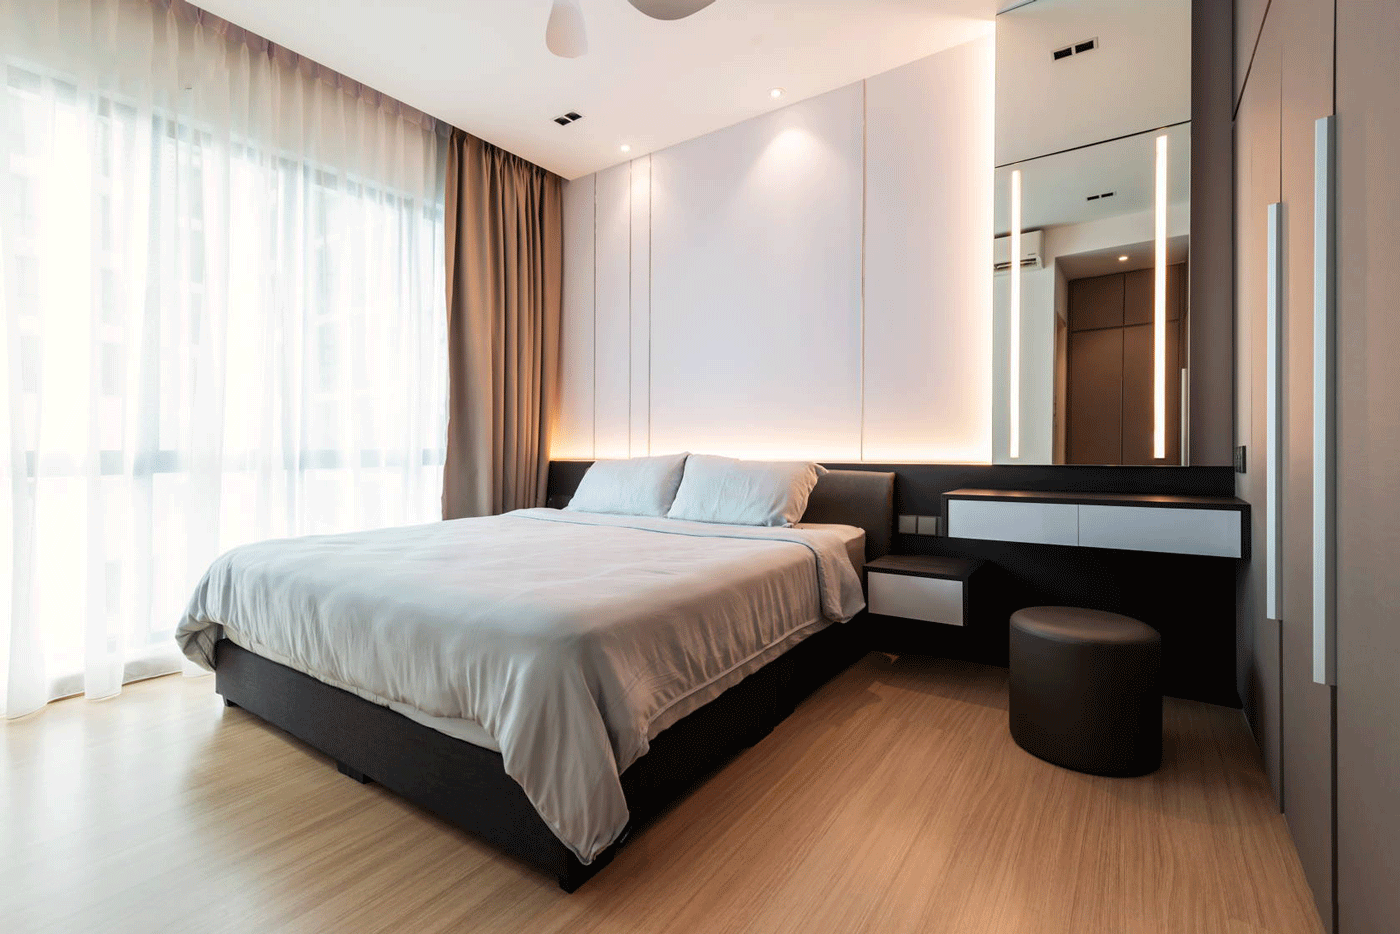 Phòng ngủ được phối màu nhẹ nhàng mang lại cảm giác dễ chịu, thoải  mái